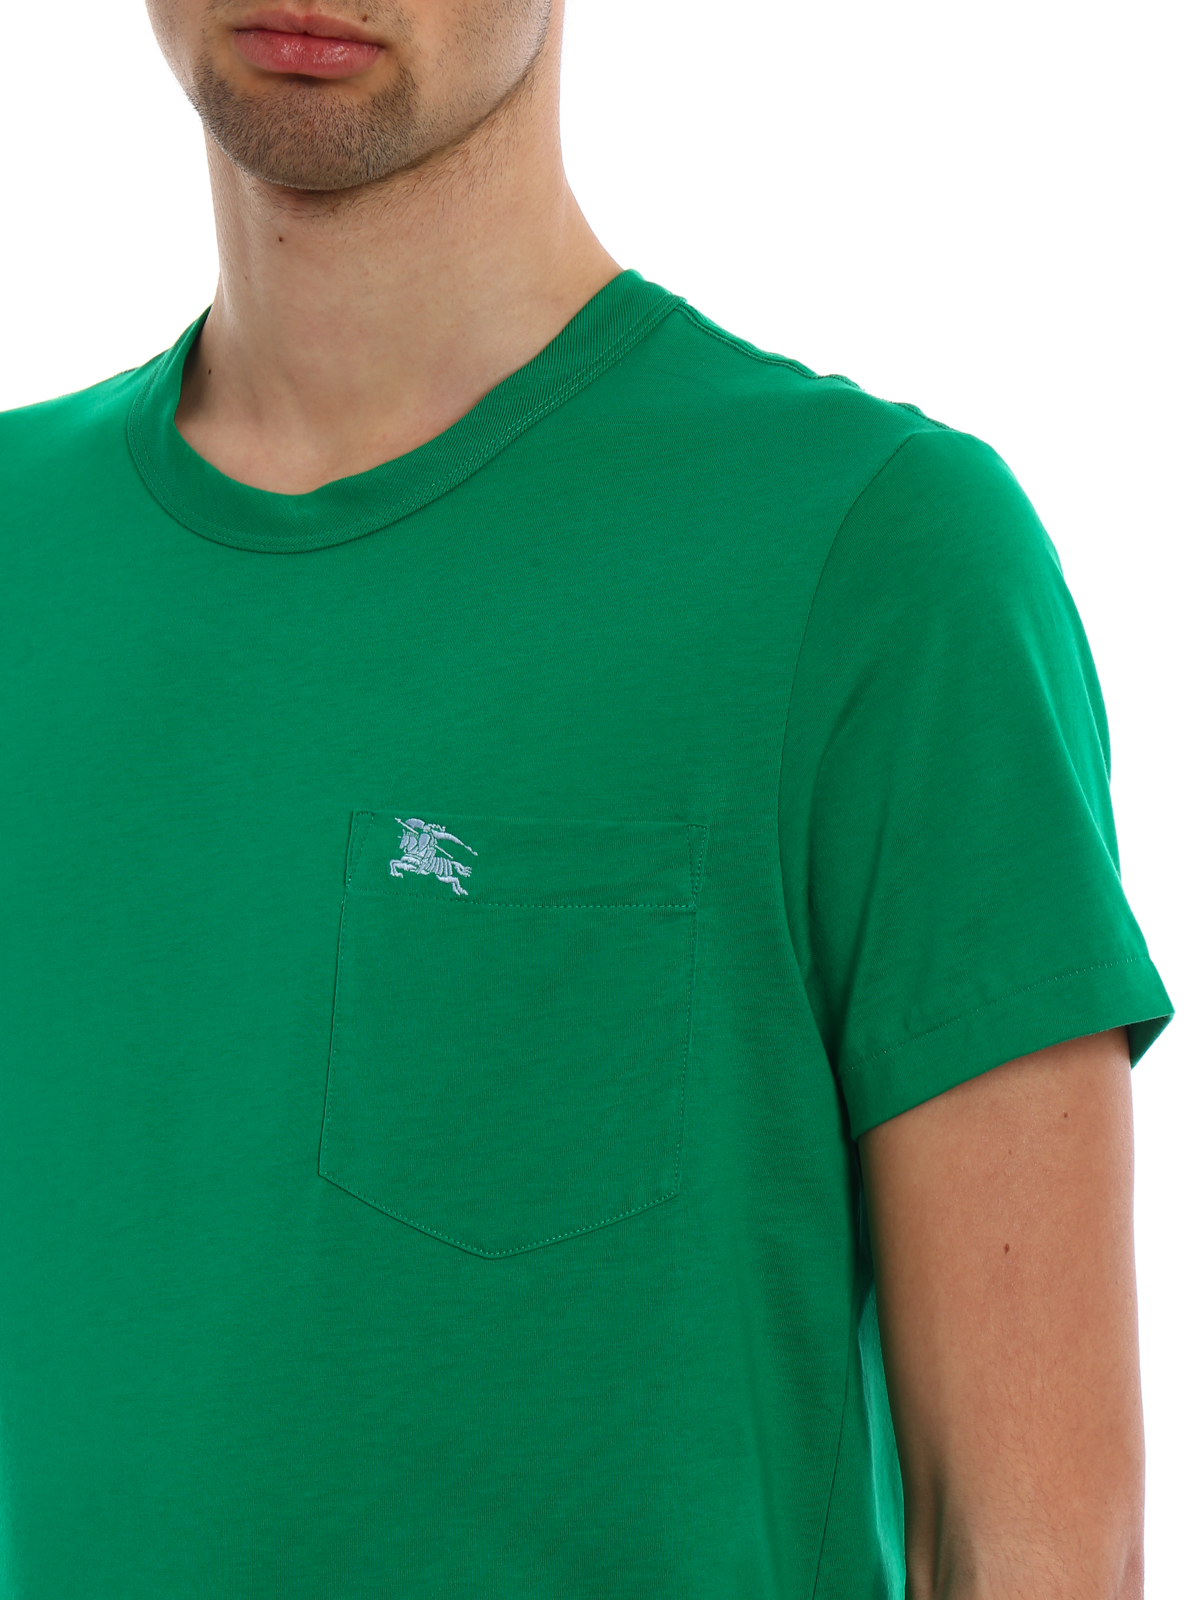 Burberry - Henton green jersey T-shirt 